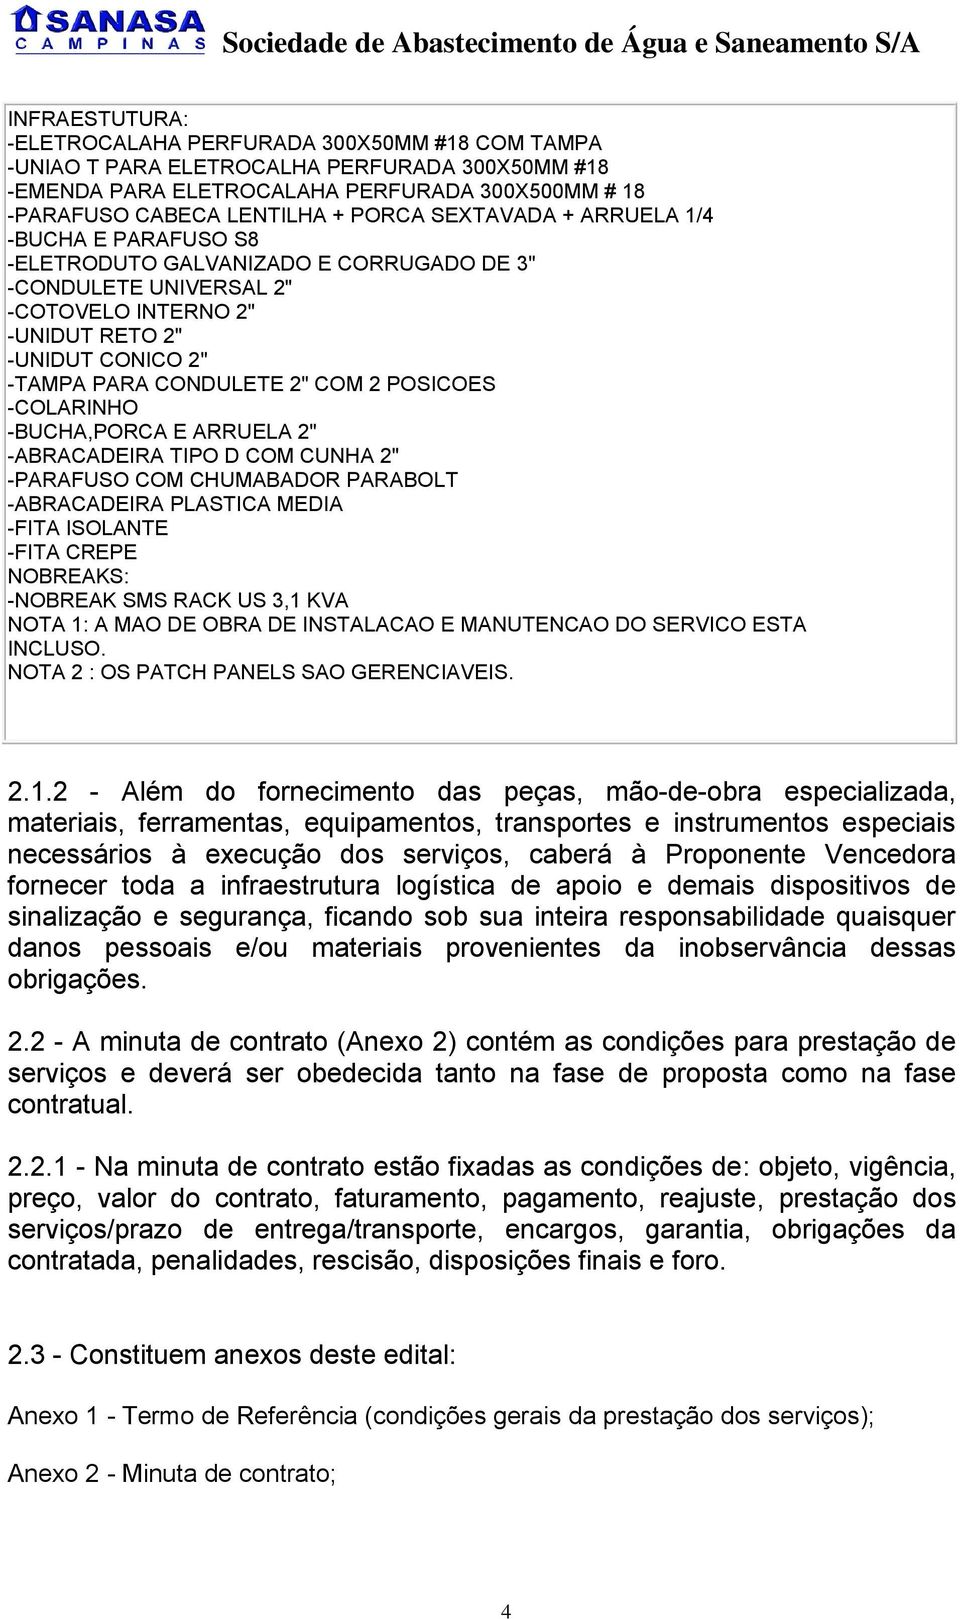 POSICOES -COLARINHO -BUCHA,PORCA E ARRUELA 2" -ABRACADEIRA TIPO D COM CUNHA 2" -PARAFUSO COM CHUMABADOR PARABOLT -ABRACADEIRA PLASTICA MEDIA -FITA ISOLANTE -FITA CREPE NOBREAKS: -NOBREAK SMS RACK US